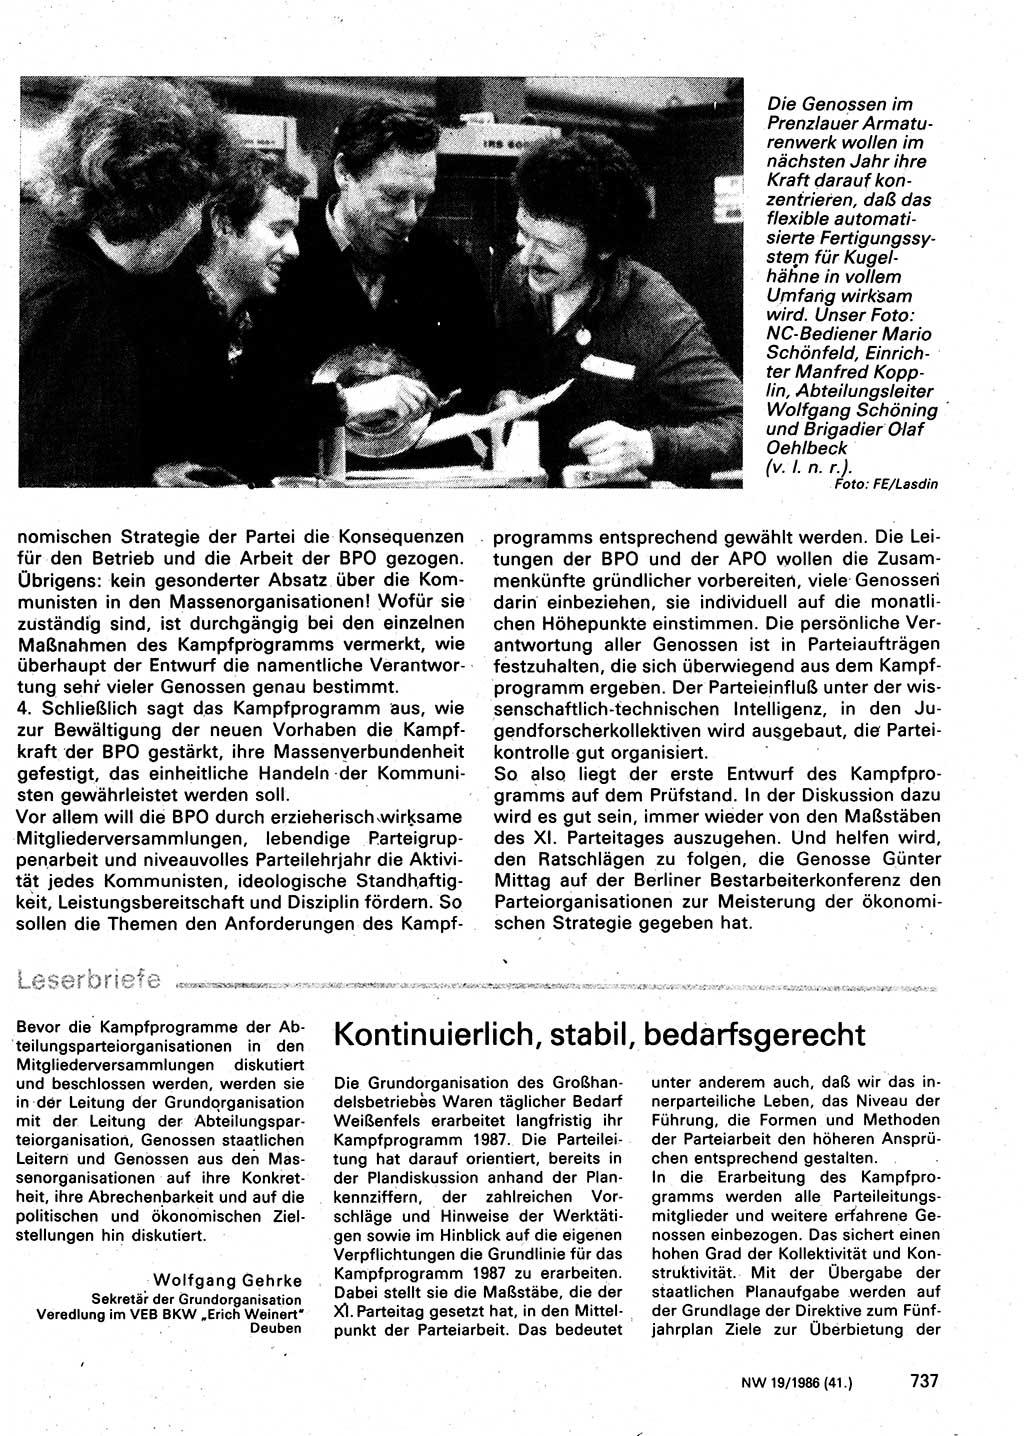 Neuer Weg (NW), Organ des Zentralkomitees (ZK) der SED (Sozialistische Einheitspartei Deutschlands) für Fragen des Parteilebens, 41. Jahrgang [Deutsche Demokratische Republik (DDR)] 1986, Seite 737 (NW ZK SED DDR 1986, S. 737)